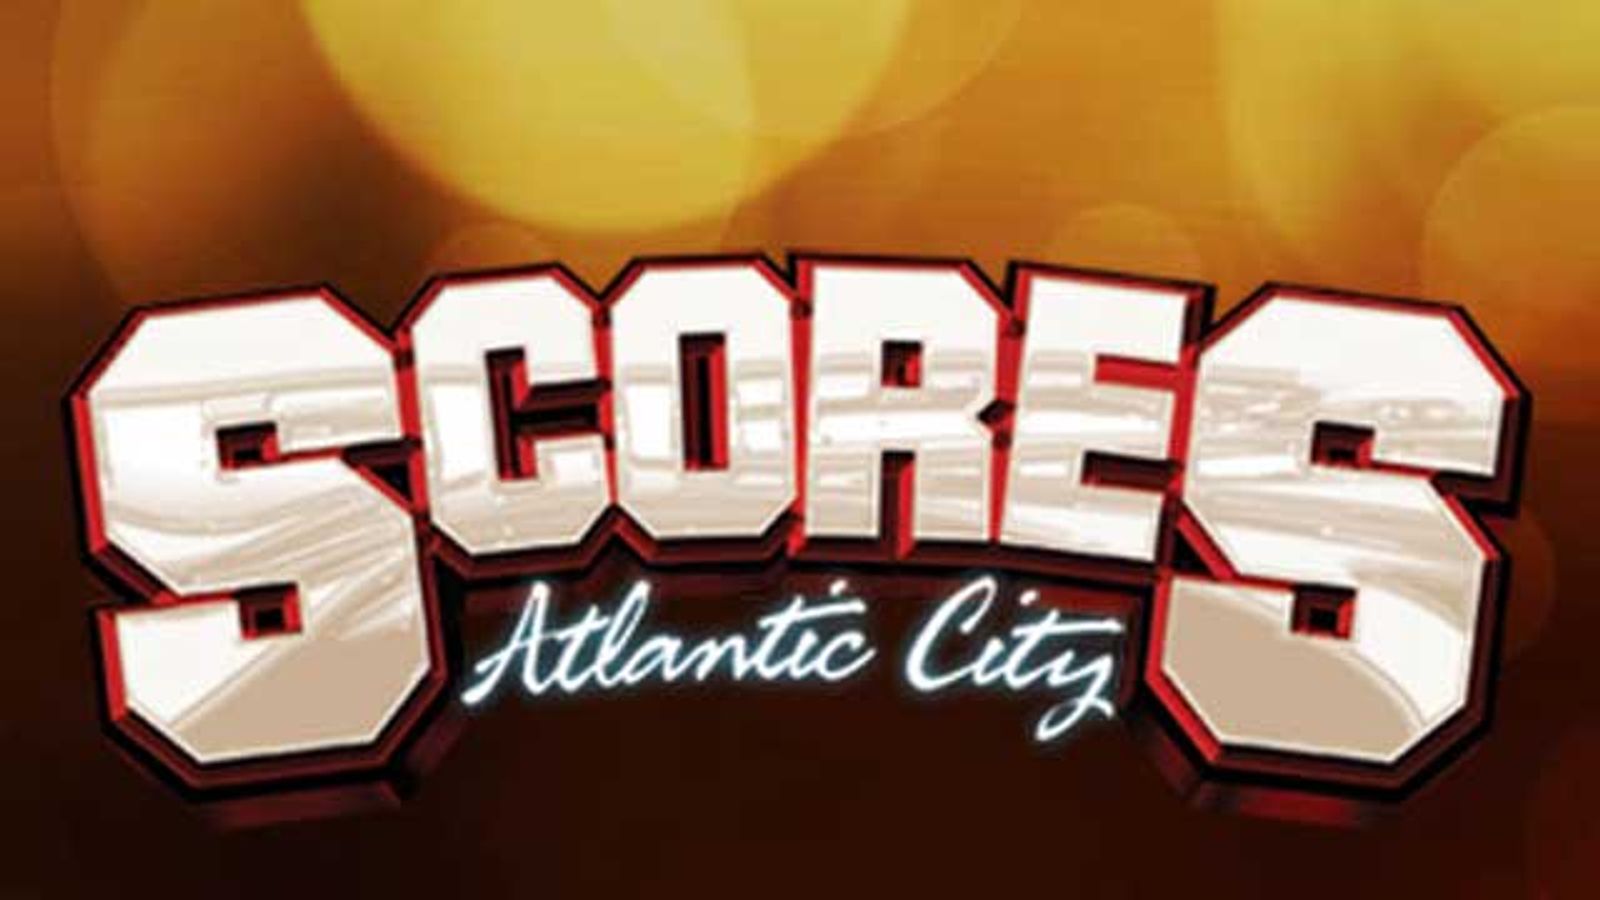 Scores Atlantic City Opens Tonight